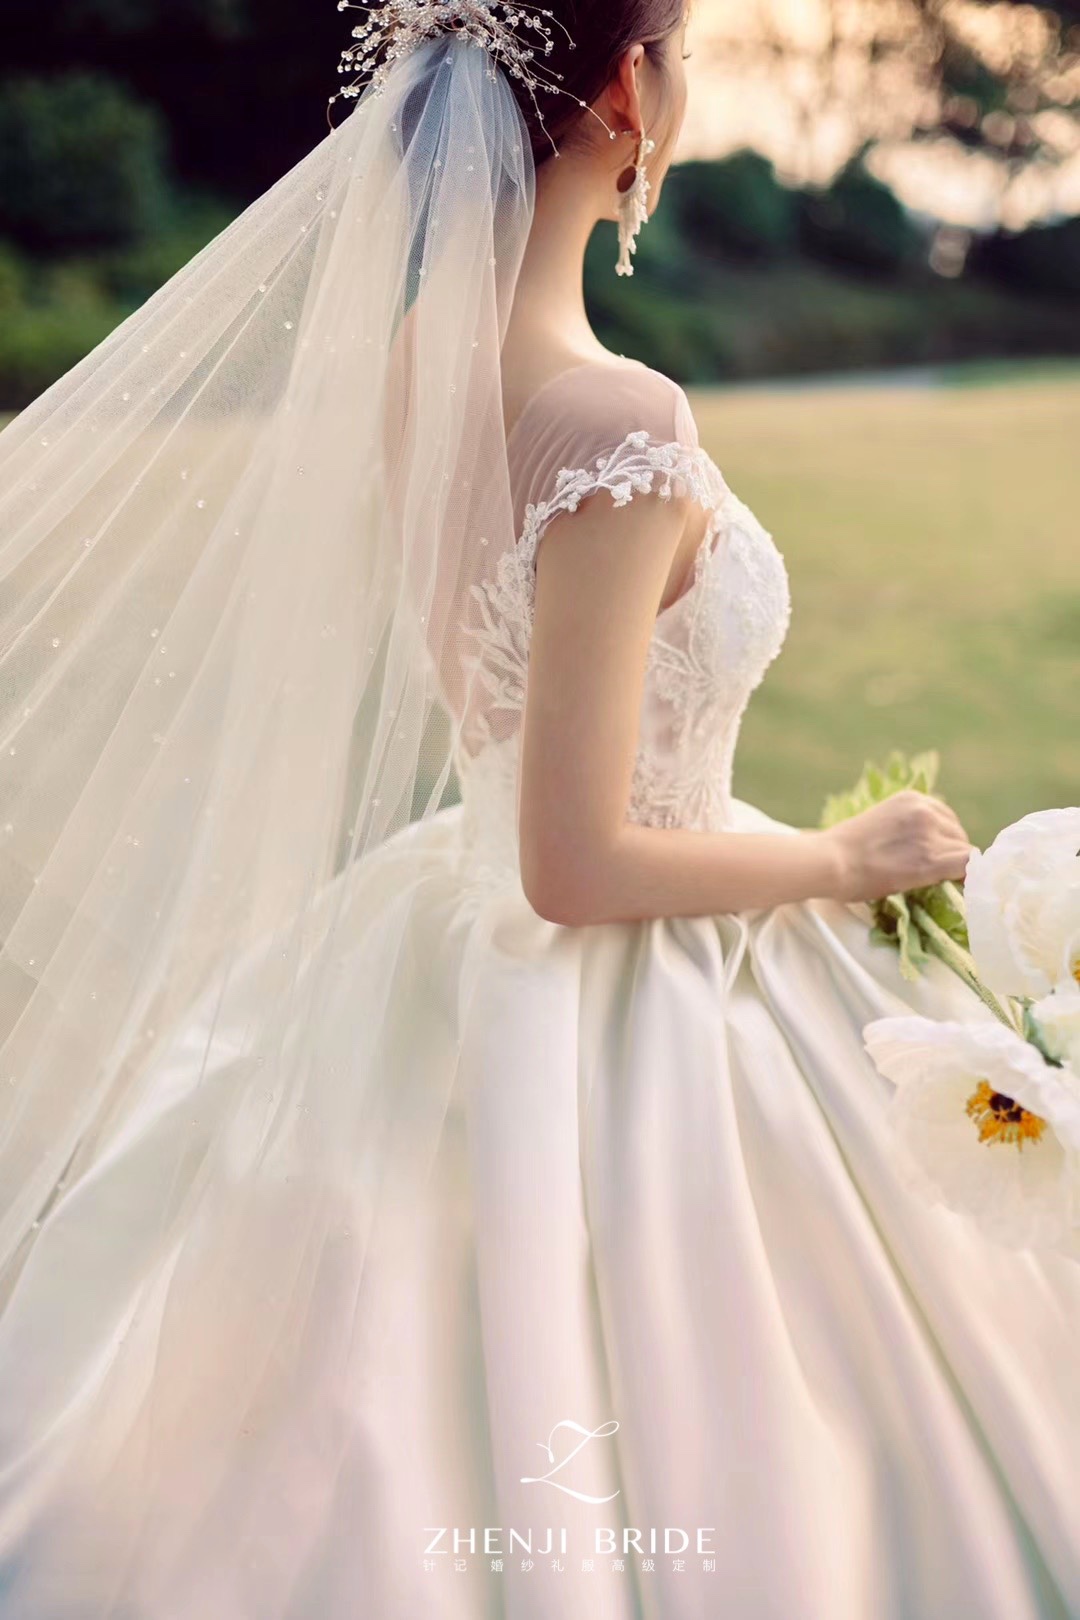 皇室米兰婚纱摄影-深圳皇室米兰婚纱摄影-百合婚礼